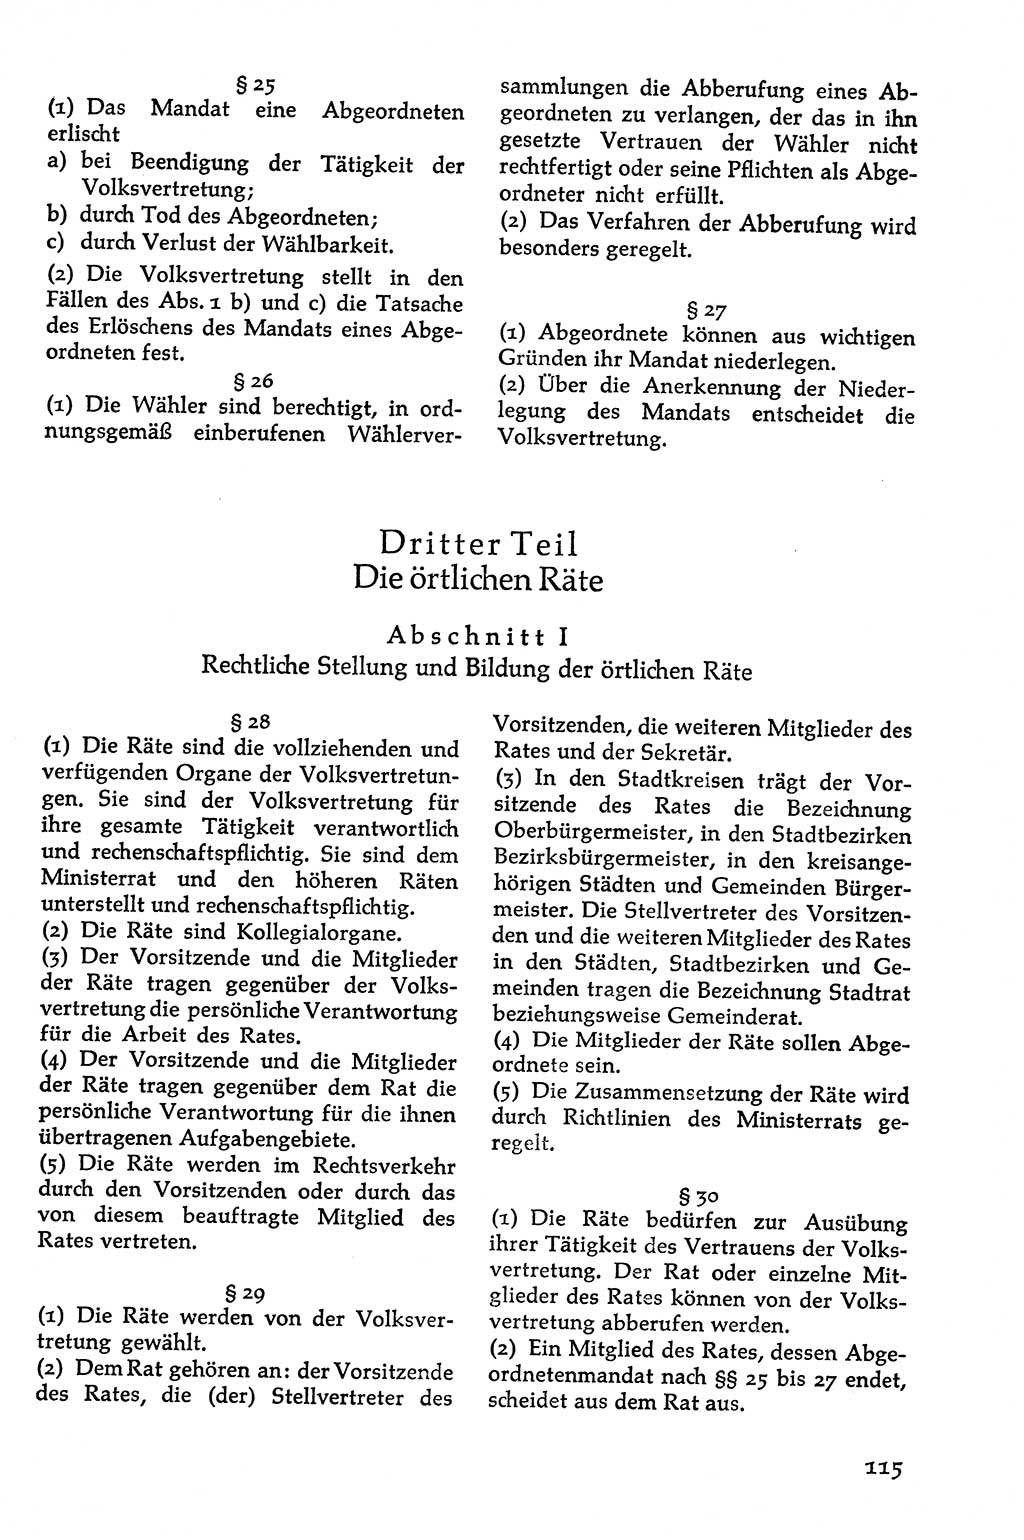 Volksdemokratische Ordnung in Mitteldeutschland [Deutsche Demokratische Republik (DDR)], Texte zur verfassungsrechtlichen Situation 1963, Seite 115 (Volksdem. Ordn. Md. DDR 1963, S. 115)